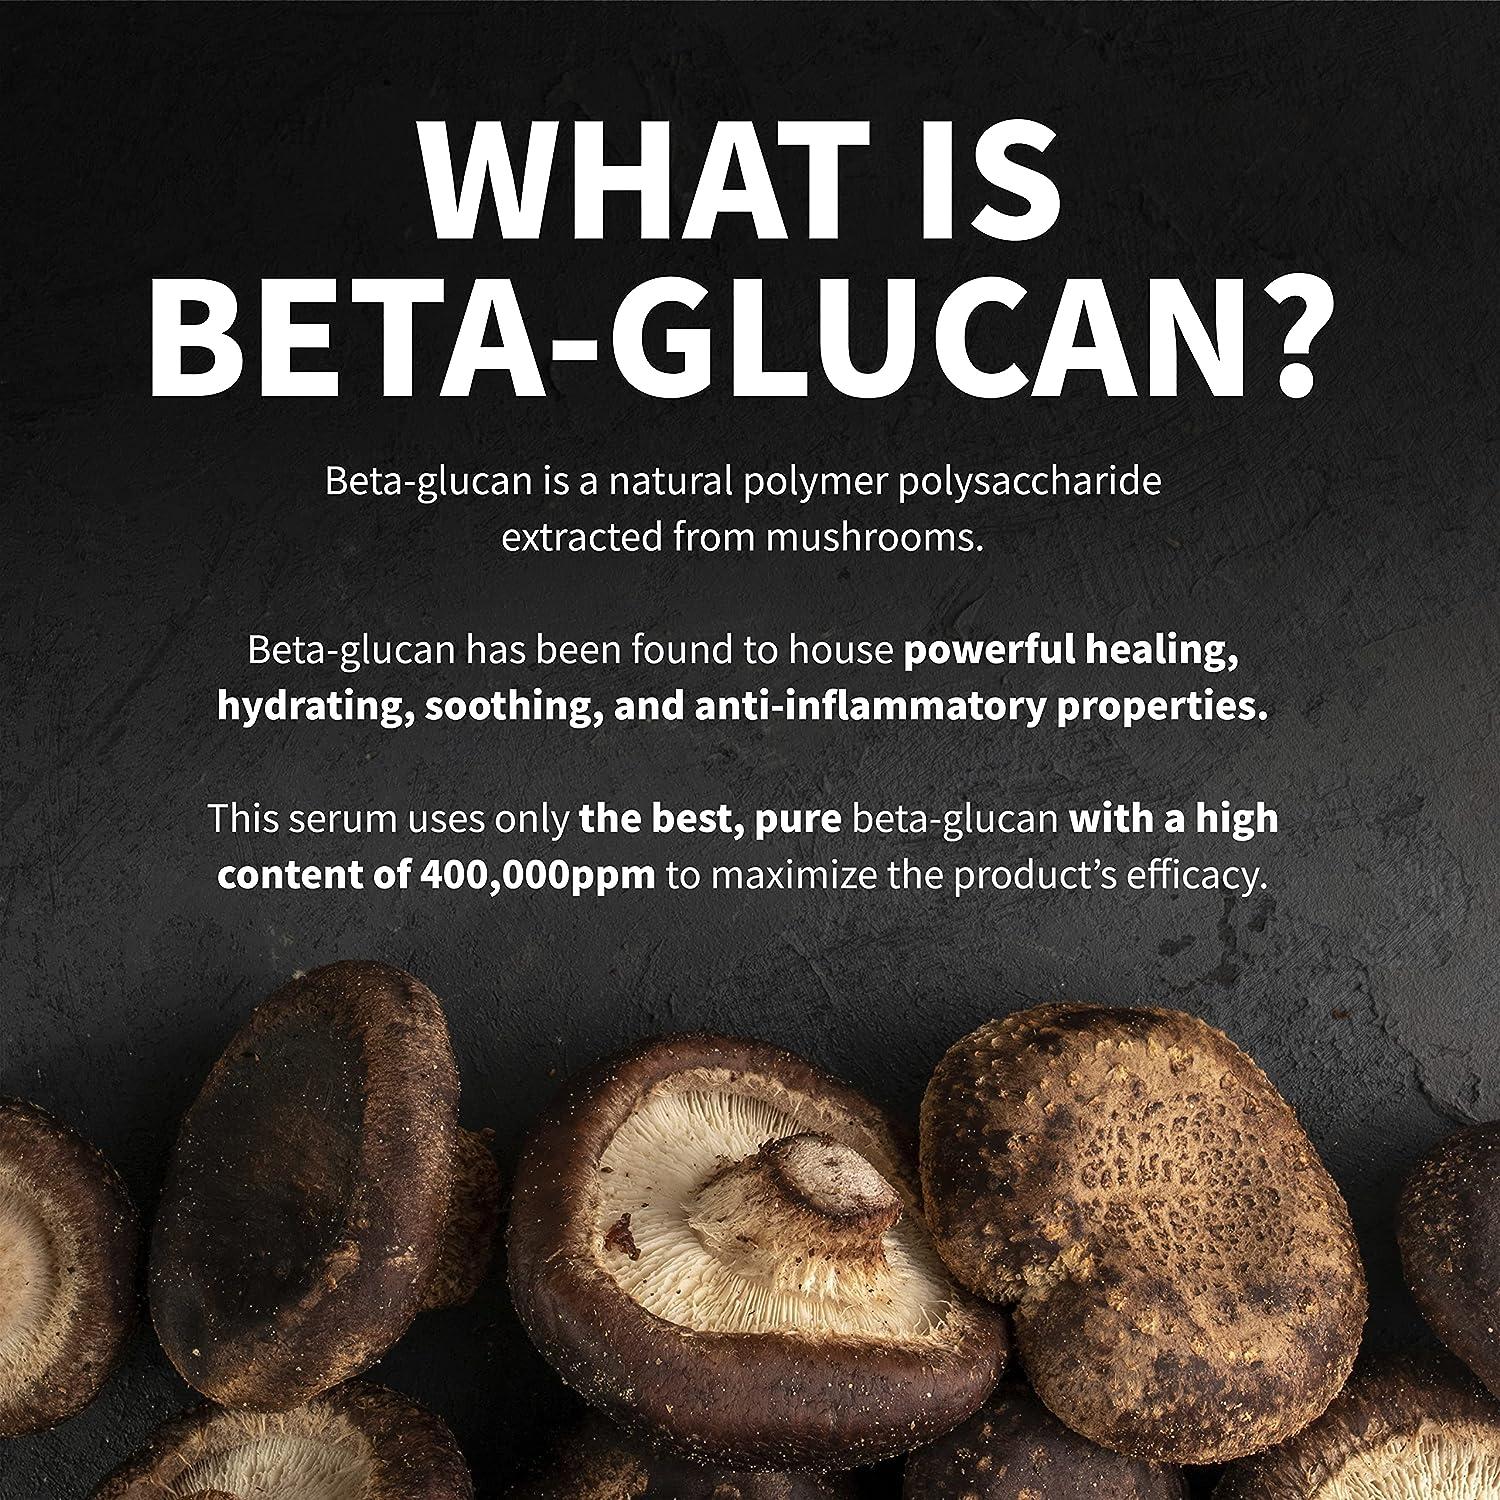 Yeast Beta Glucan là gì? Khám phá lợi ích và ứng dụng của hợp chất kỳ diệu này